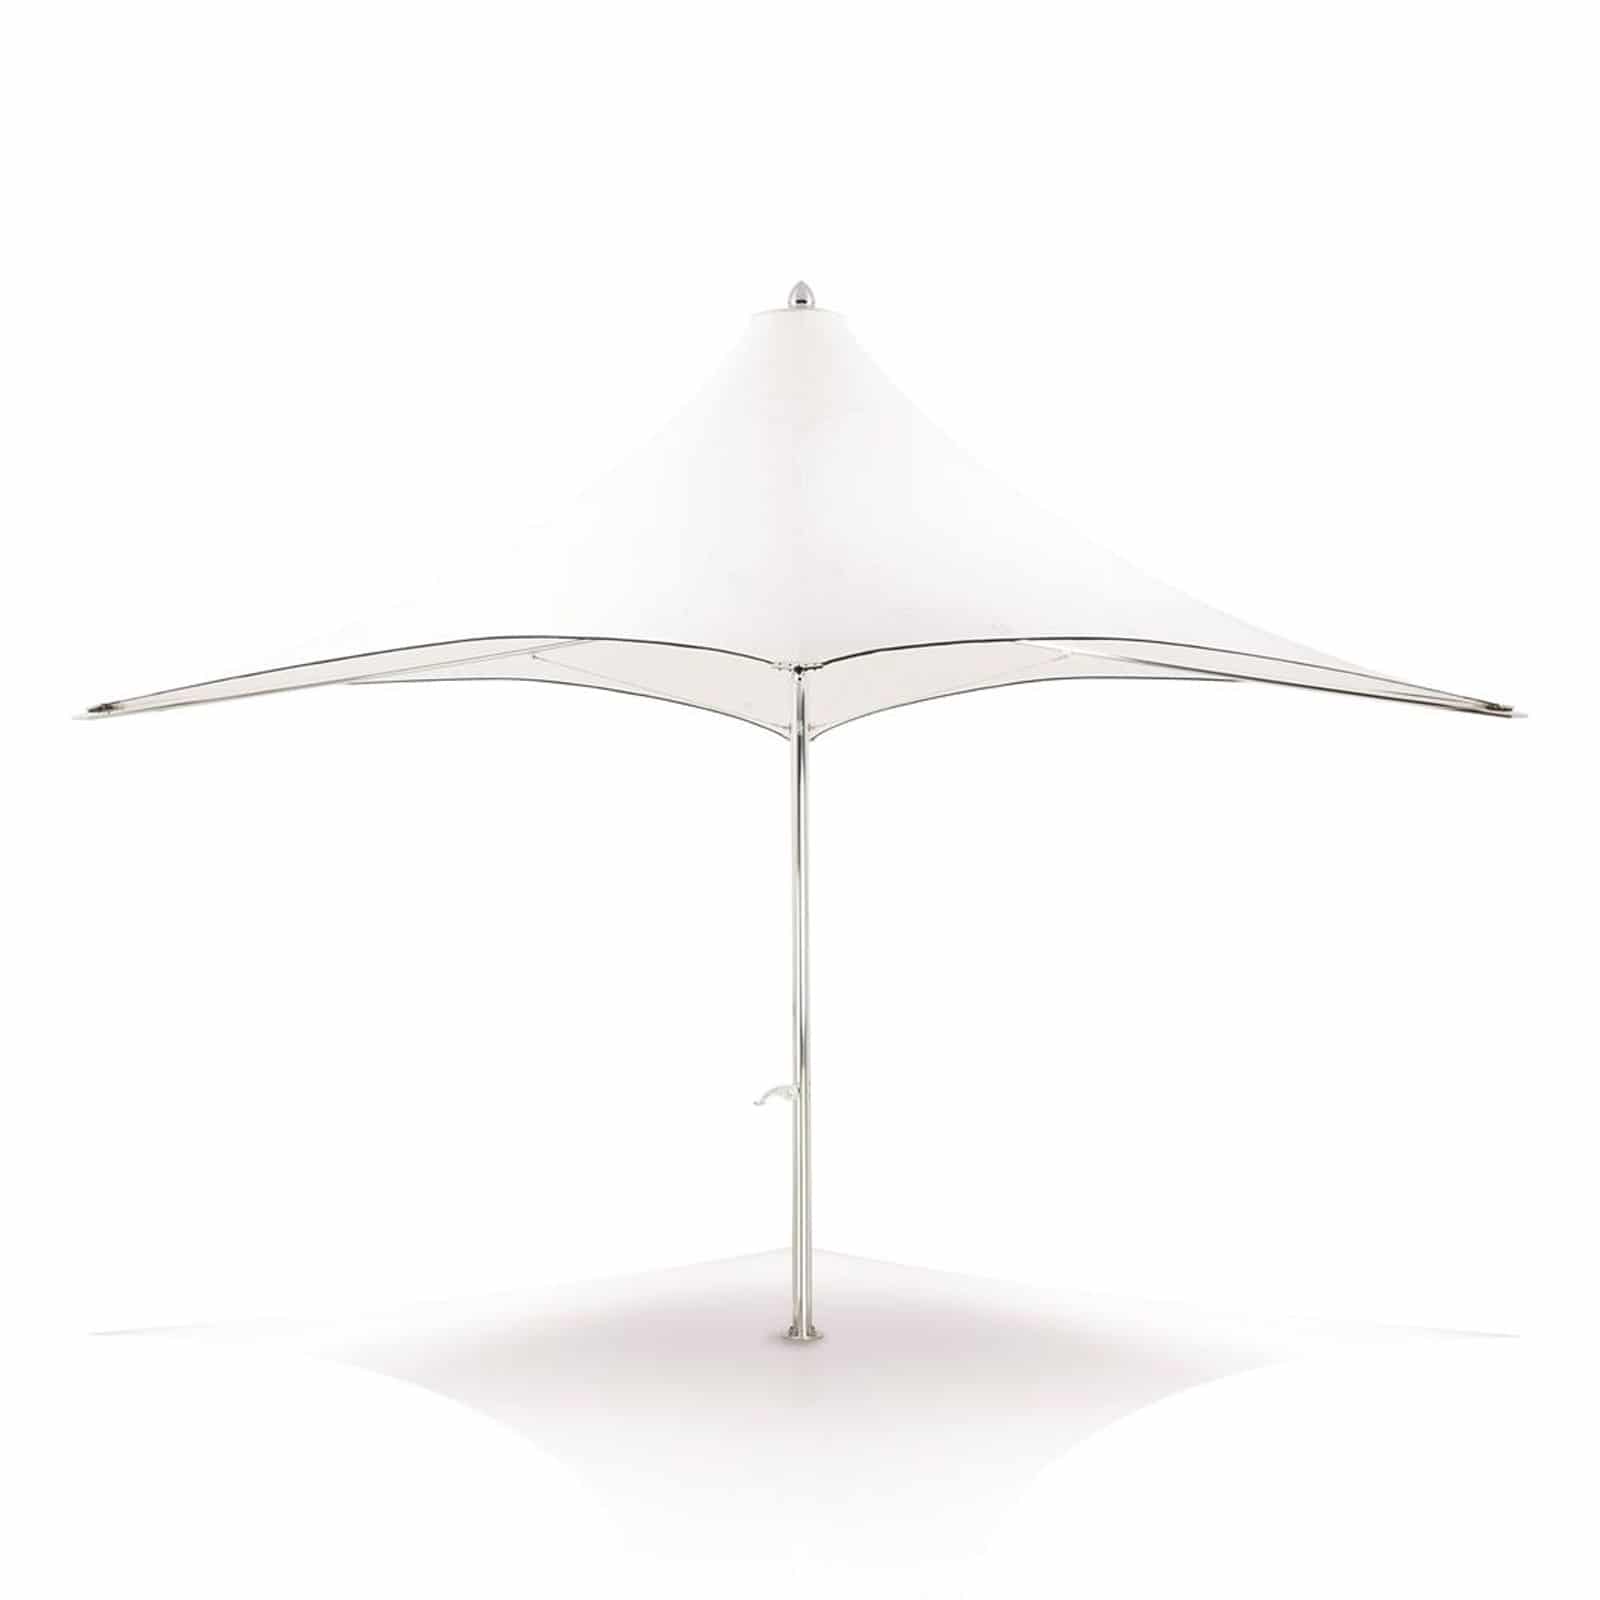 Tuuci Ocean Master MAX F1 Umbrella, Commercial - White